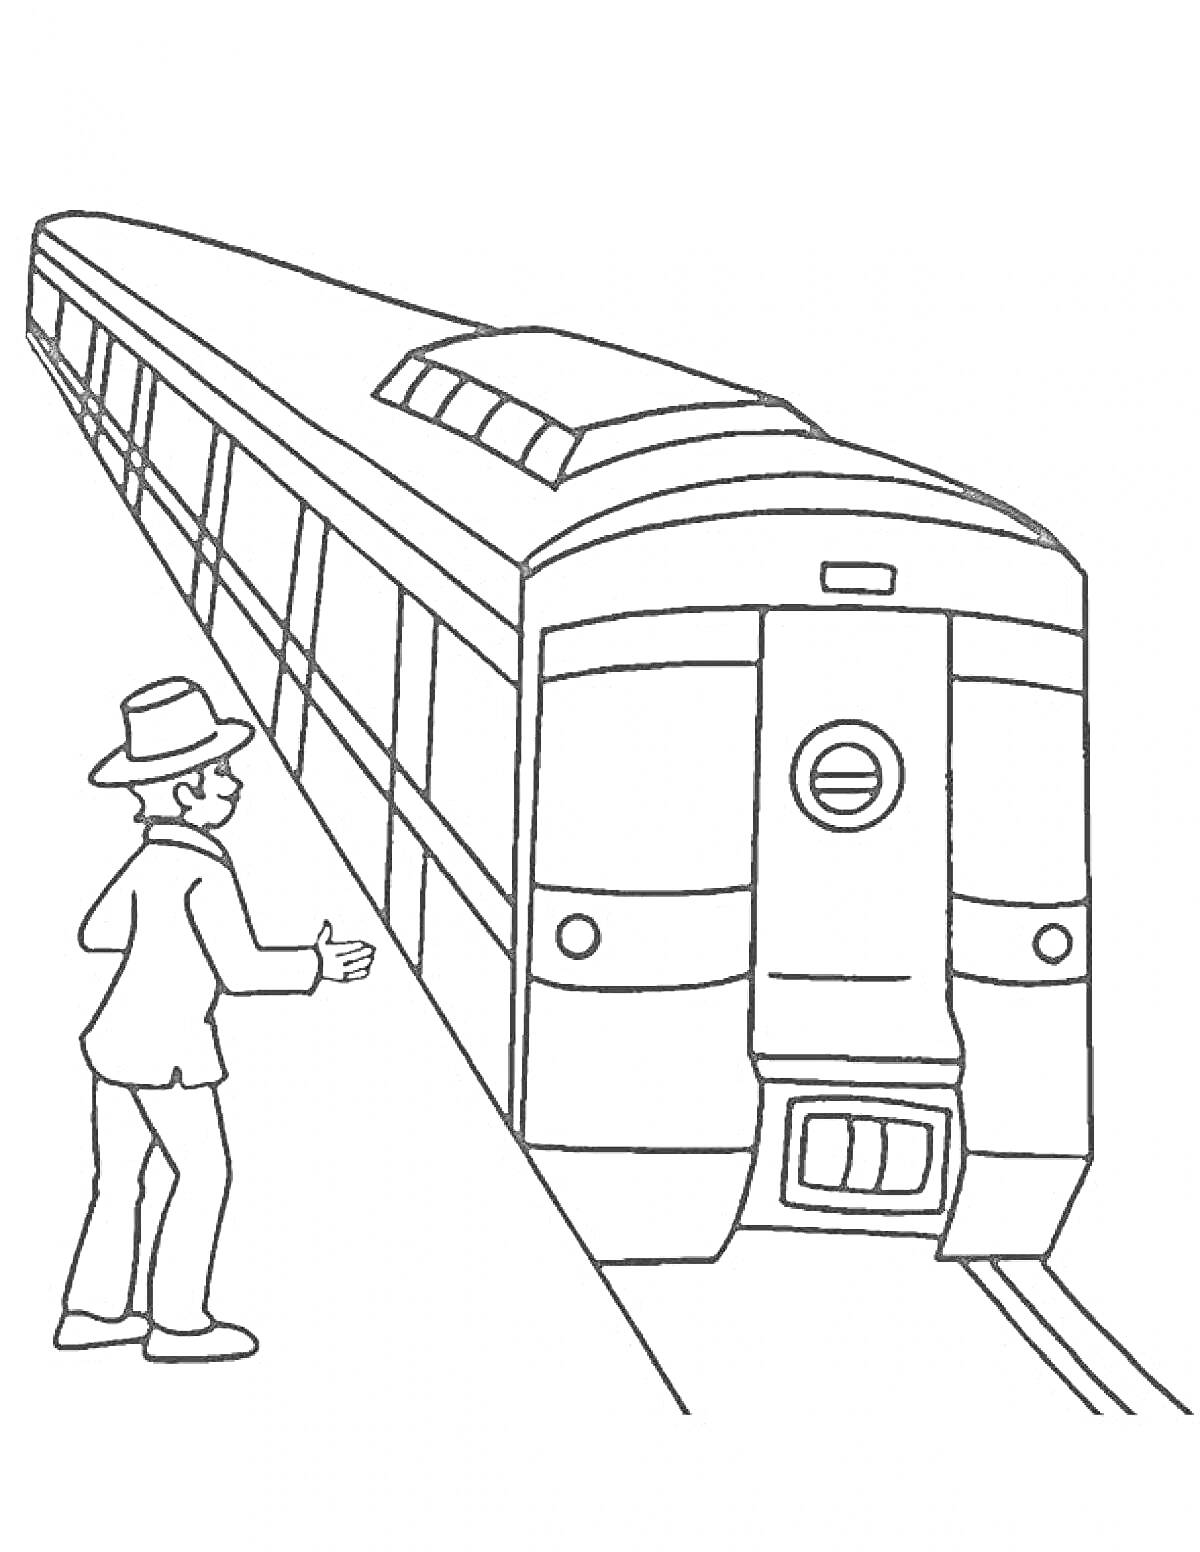 Человек в шляпе на платформе и поезд метро